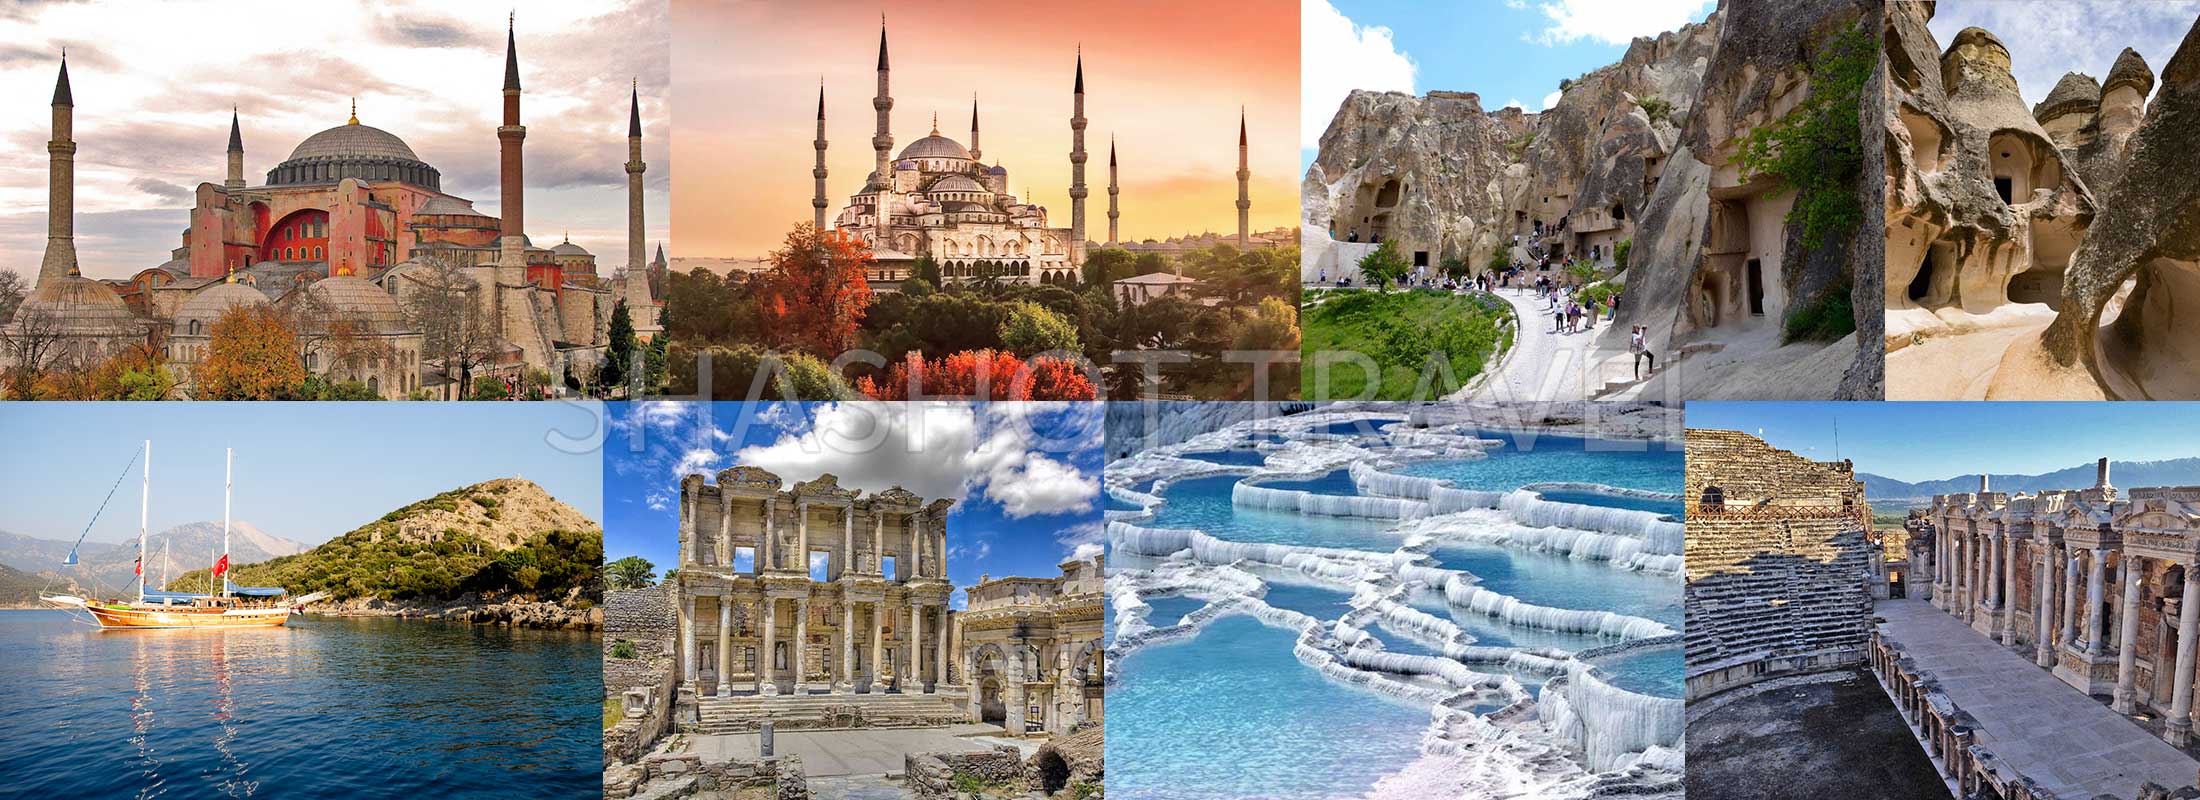 turkey-package-tours-12-days-istanbul-hagia-sophia-museum-cappadocia-blue-cruise-olympos-fethiye-ephesus-pamukkale